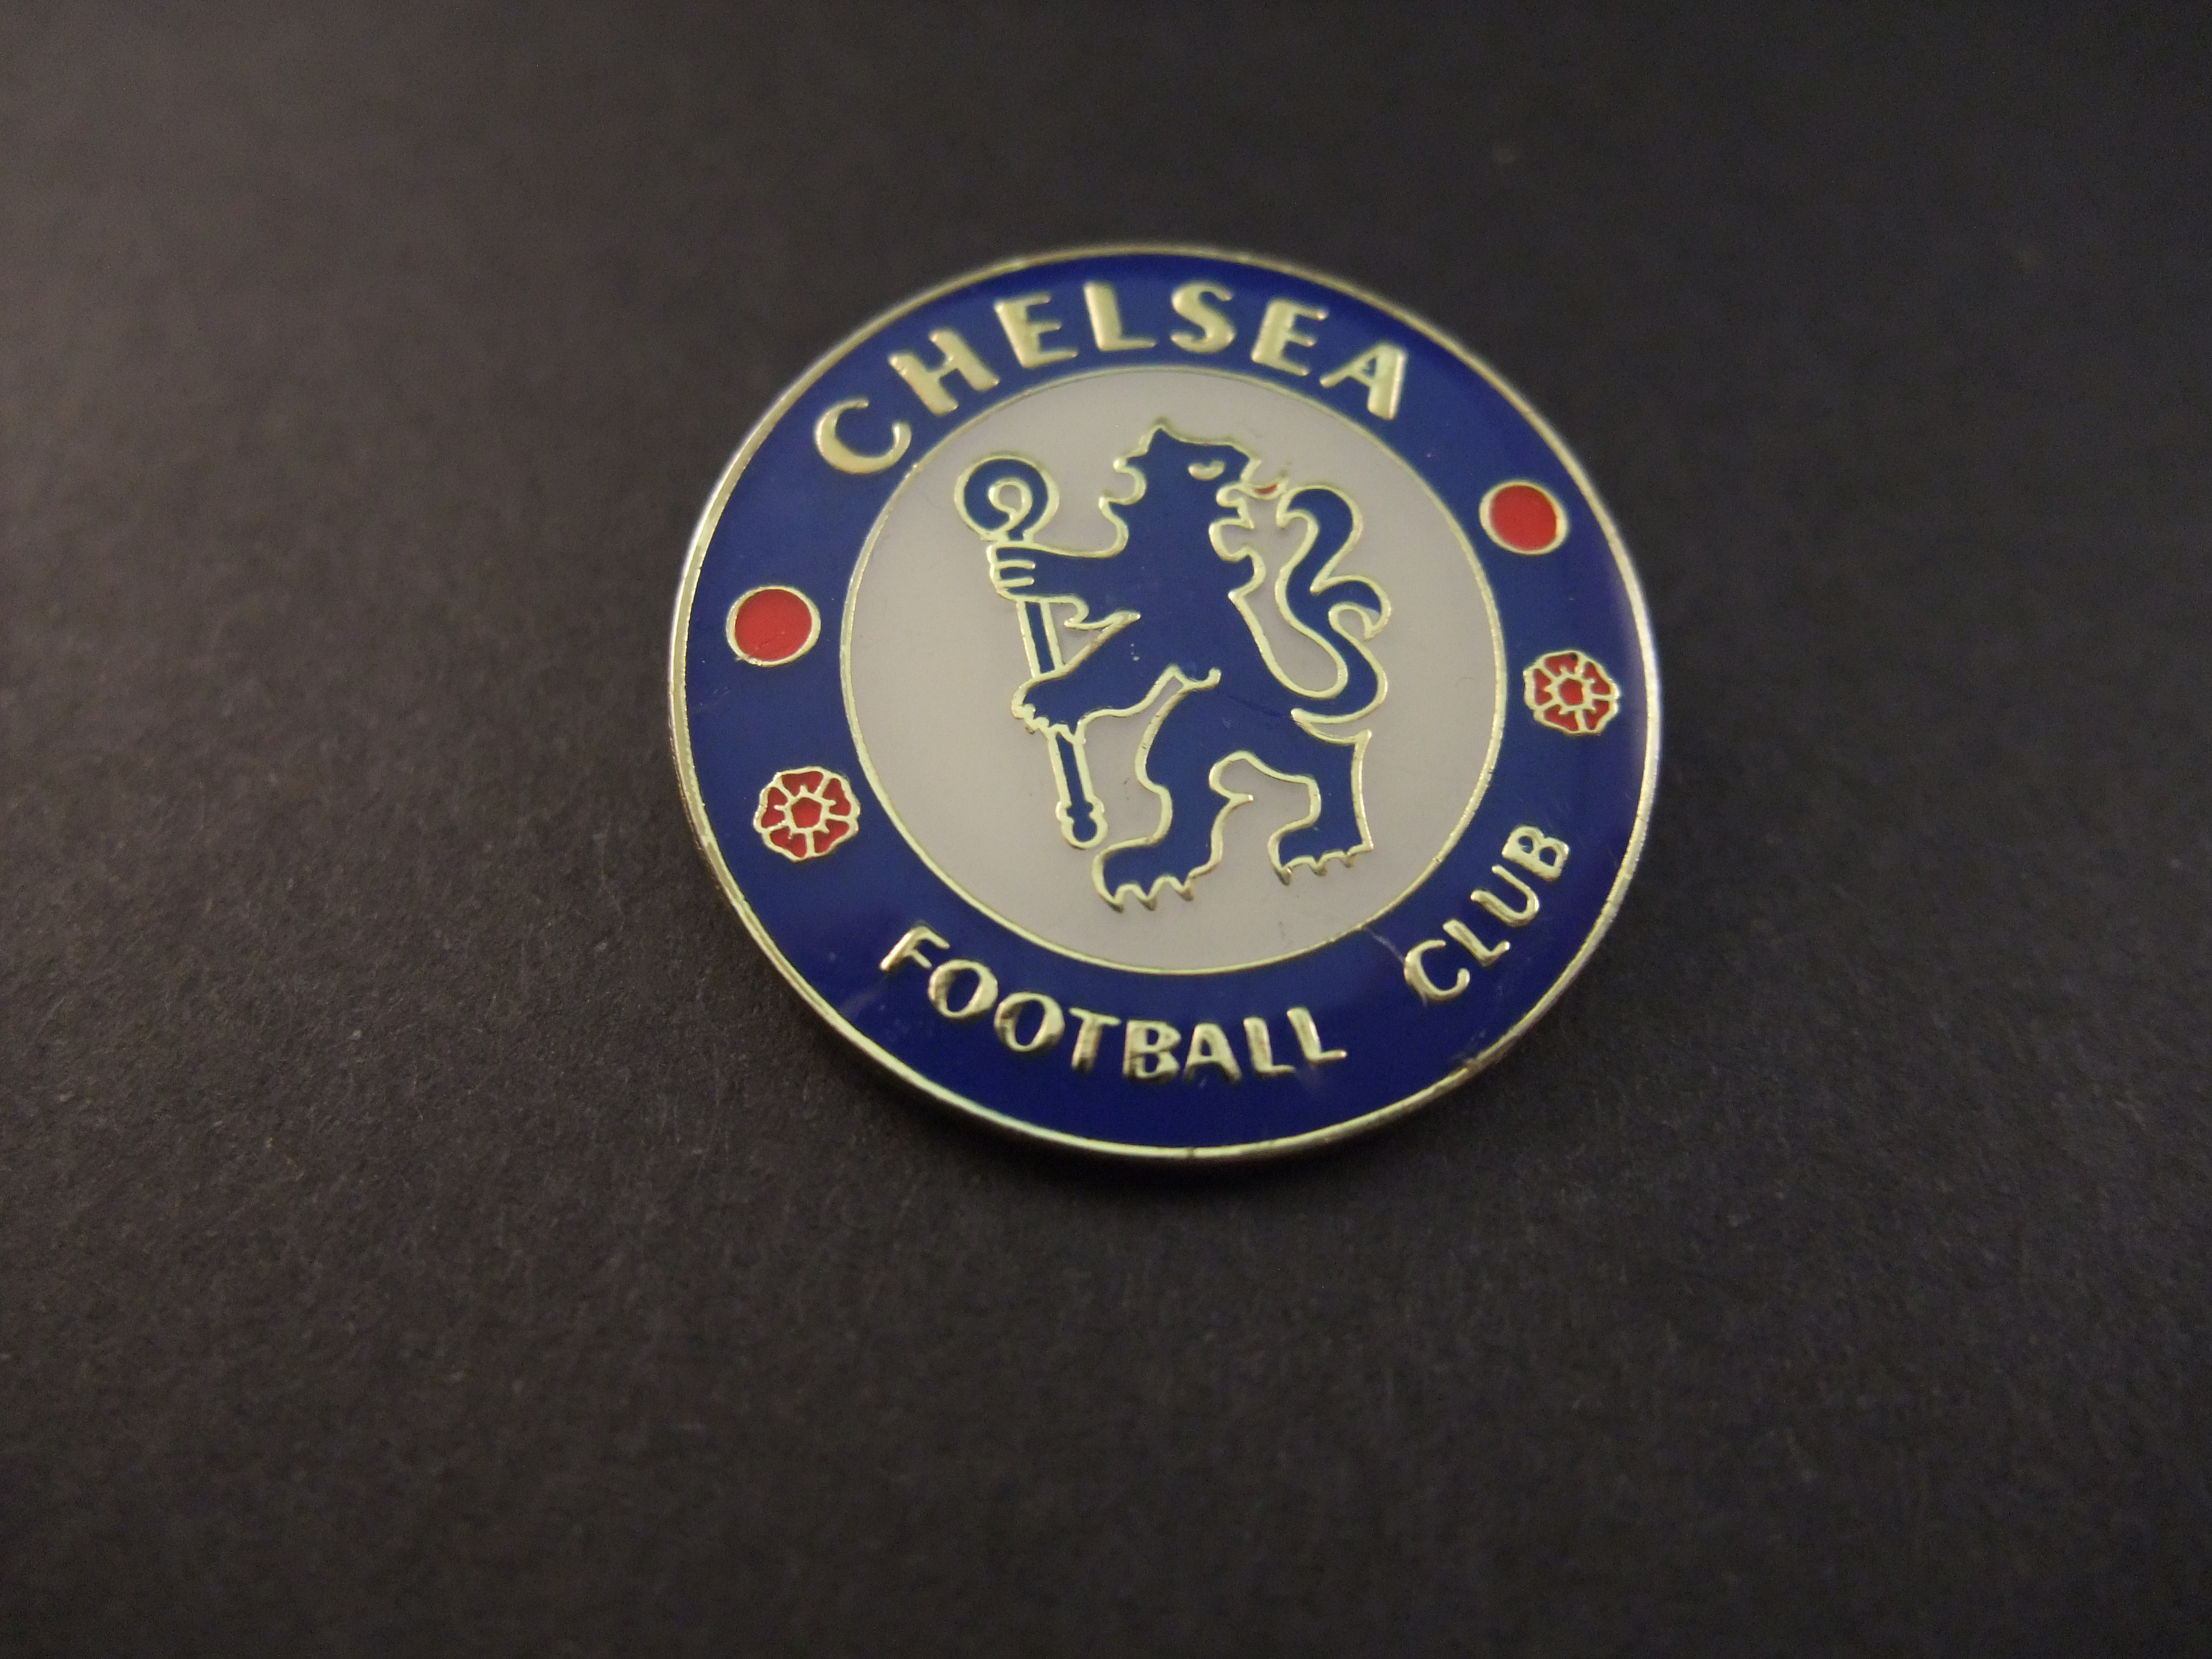 Chelsea FC Engelse voetbalclub uit Londen